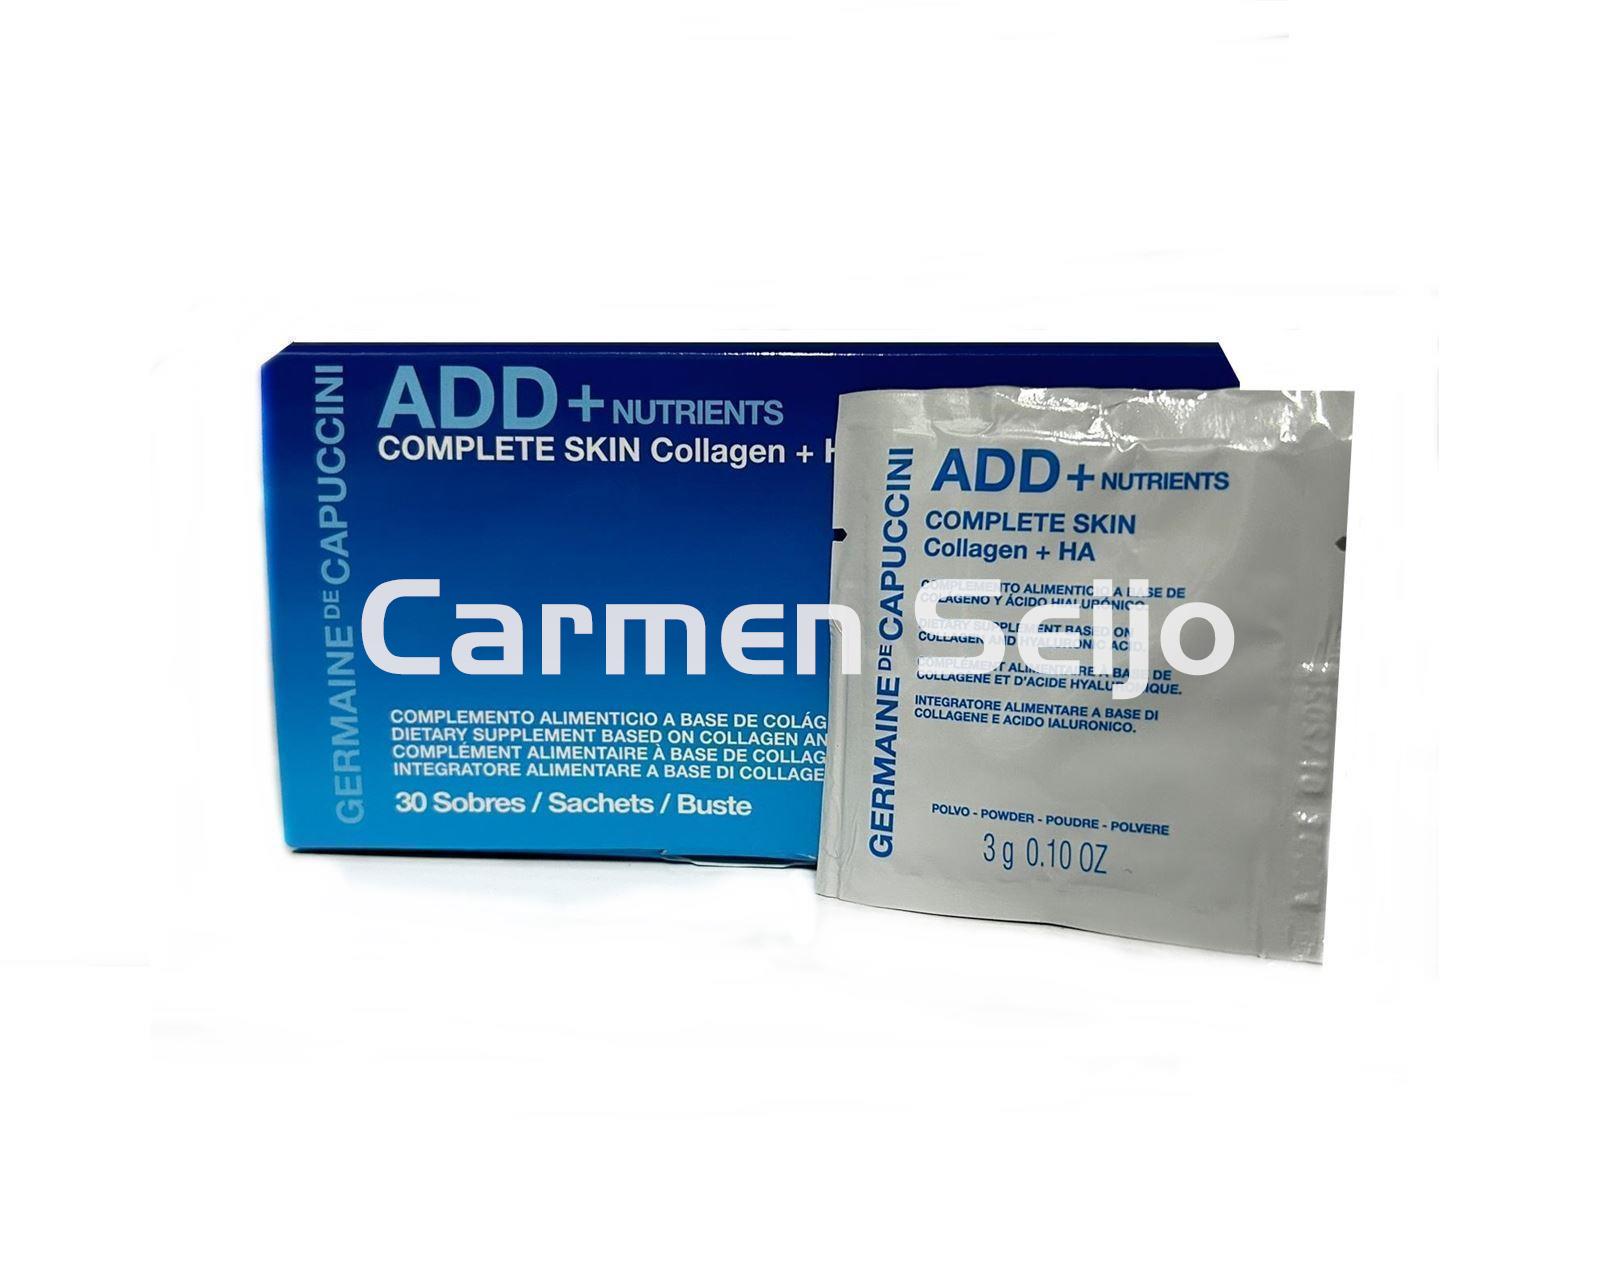 Germaine de Capuccini Nutricosmético ADD+ Complete Skin Collagen + HA - Imagen 1